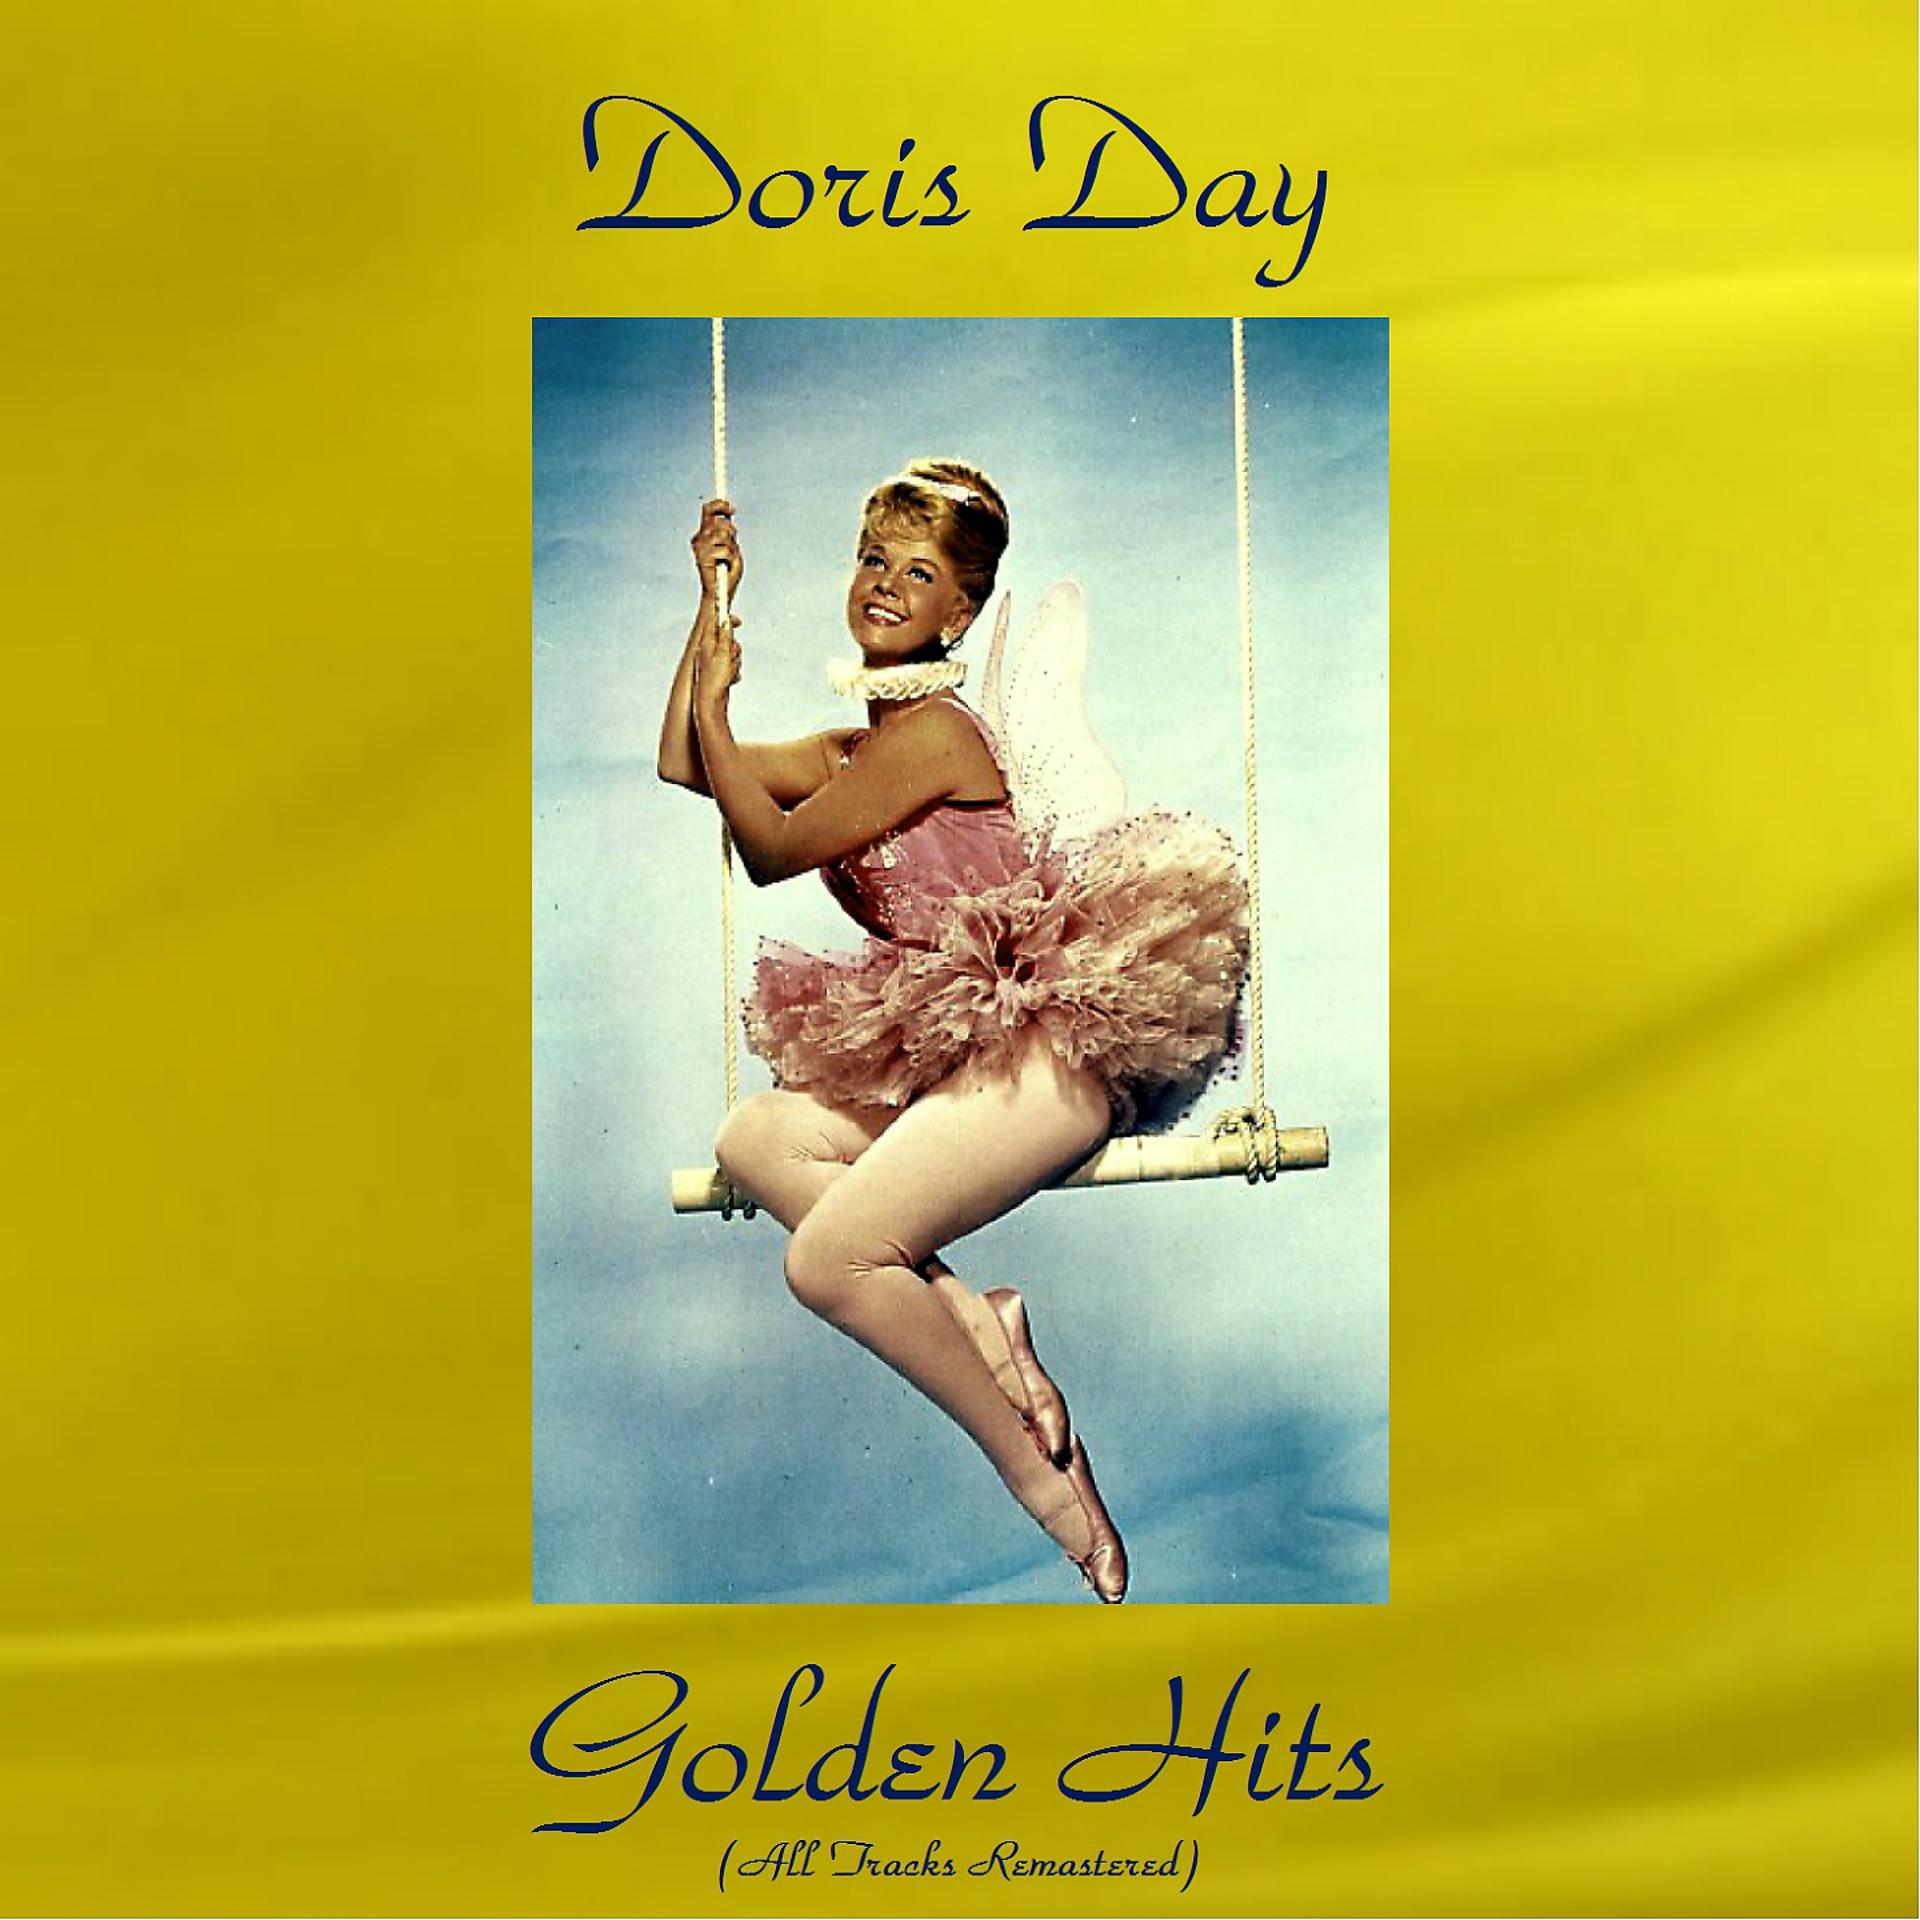 Золотые дни слушать. Дорис Дэй треки. Close your Eyes Doris Day. Doris Day Dream a little Dream of me. Песня Дорис Дэй пе Хапс.